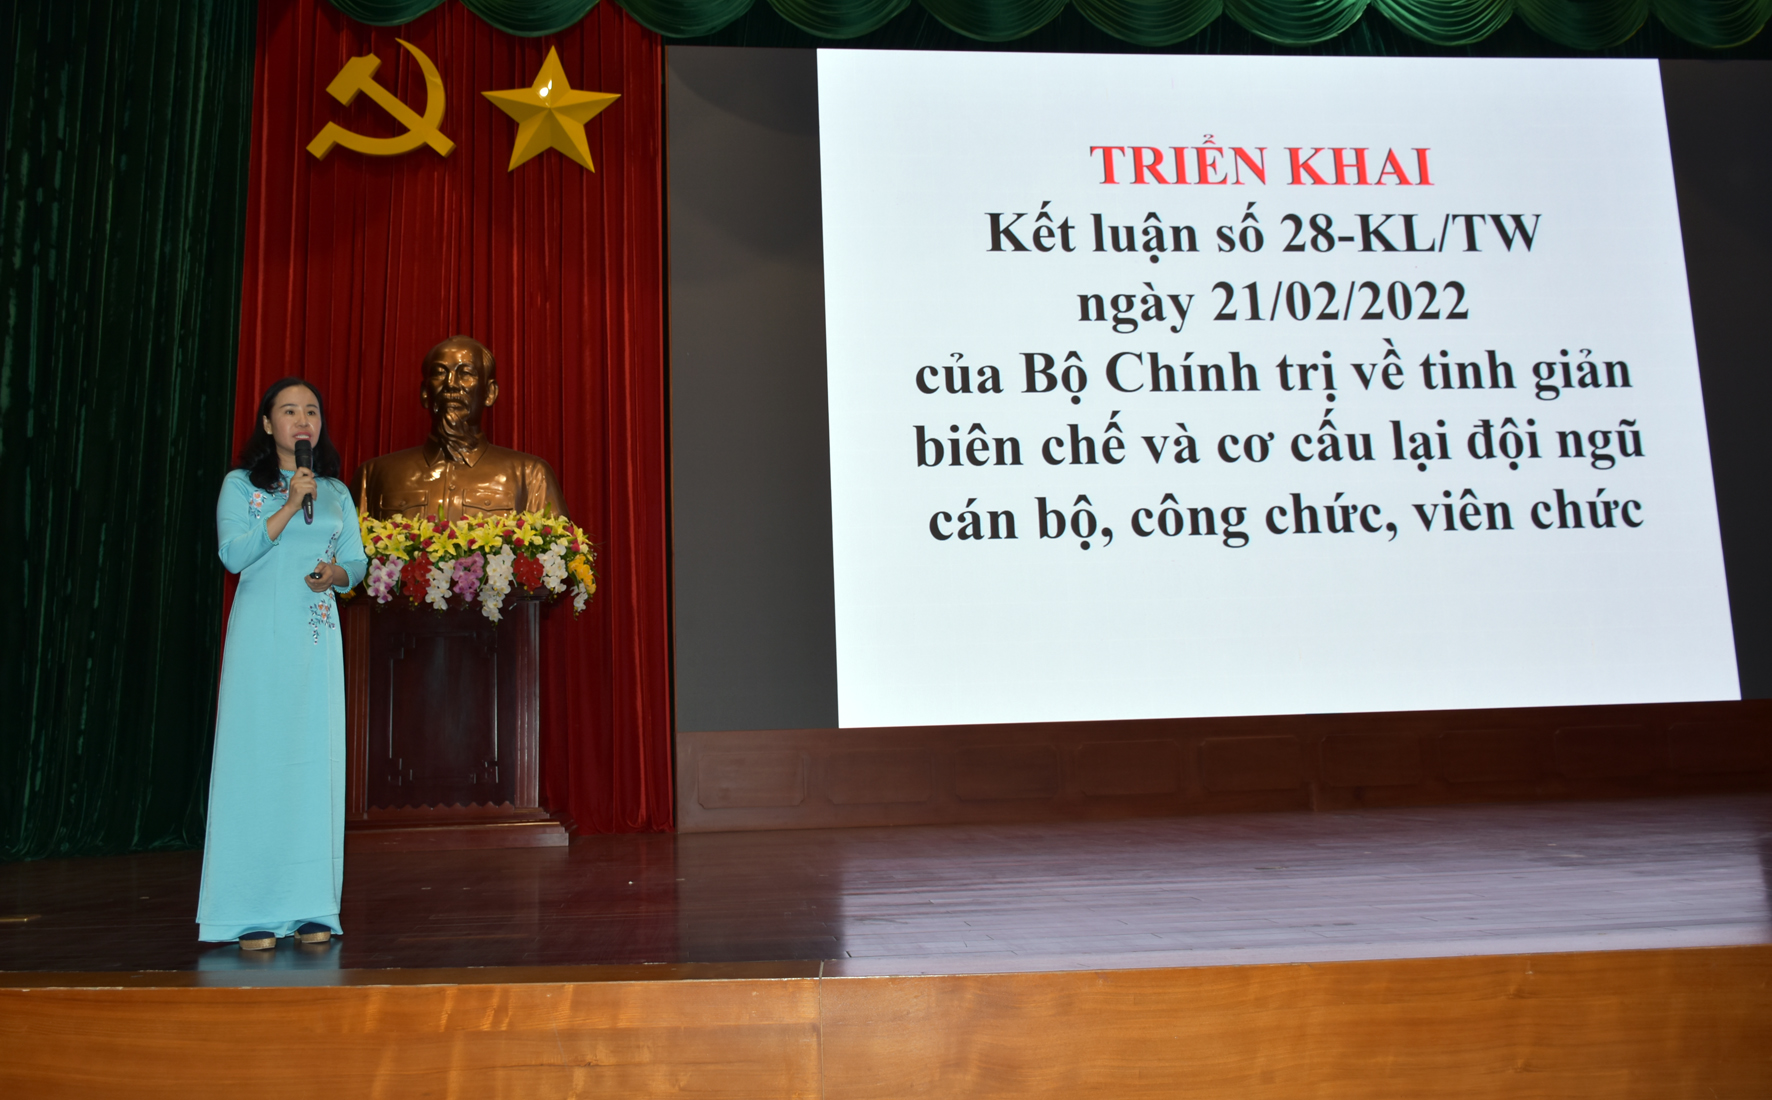 Bà Võ Ngọc Thanh Trúc, Phó Trưởng Ban Thường trực Ban Tổ chức Tỉnh ủy triển khai  Kết luận số 28-KL/TW.